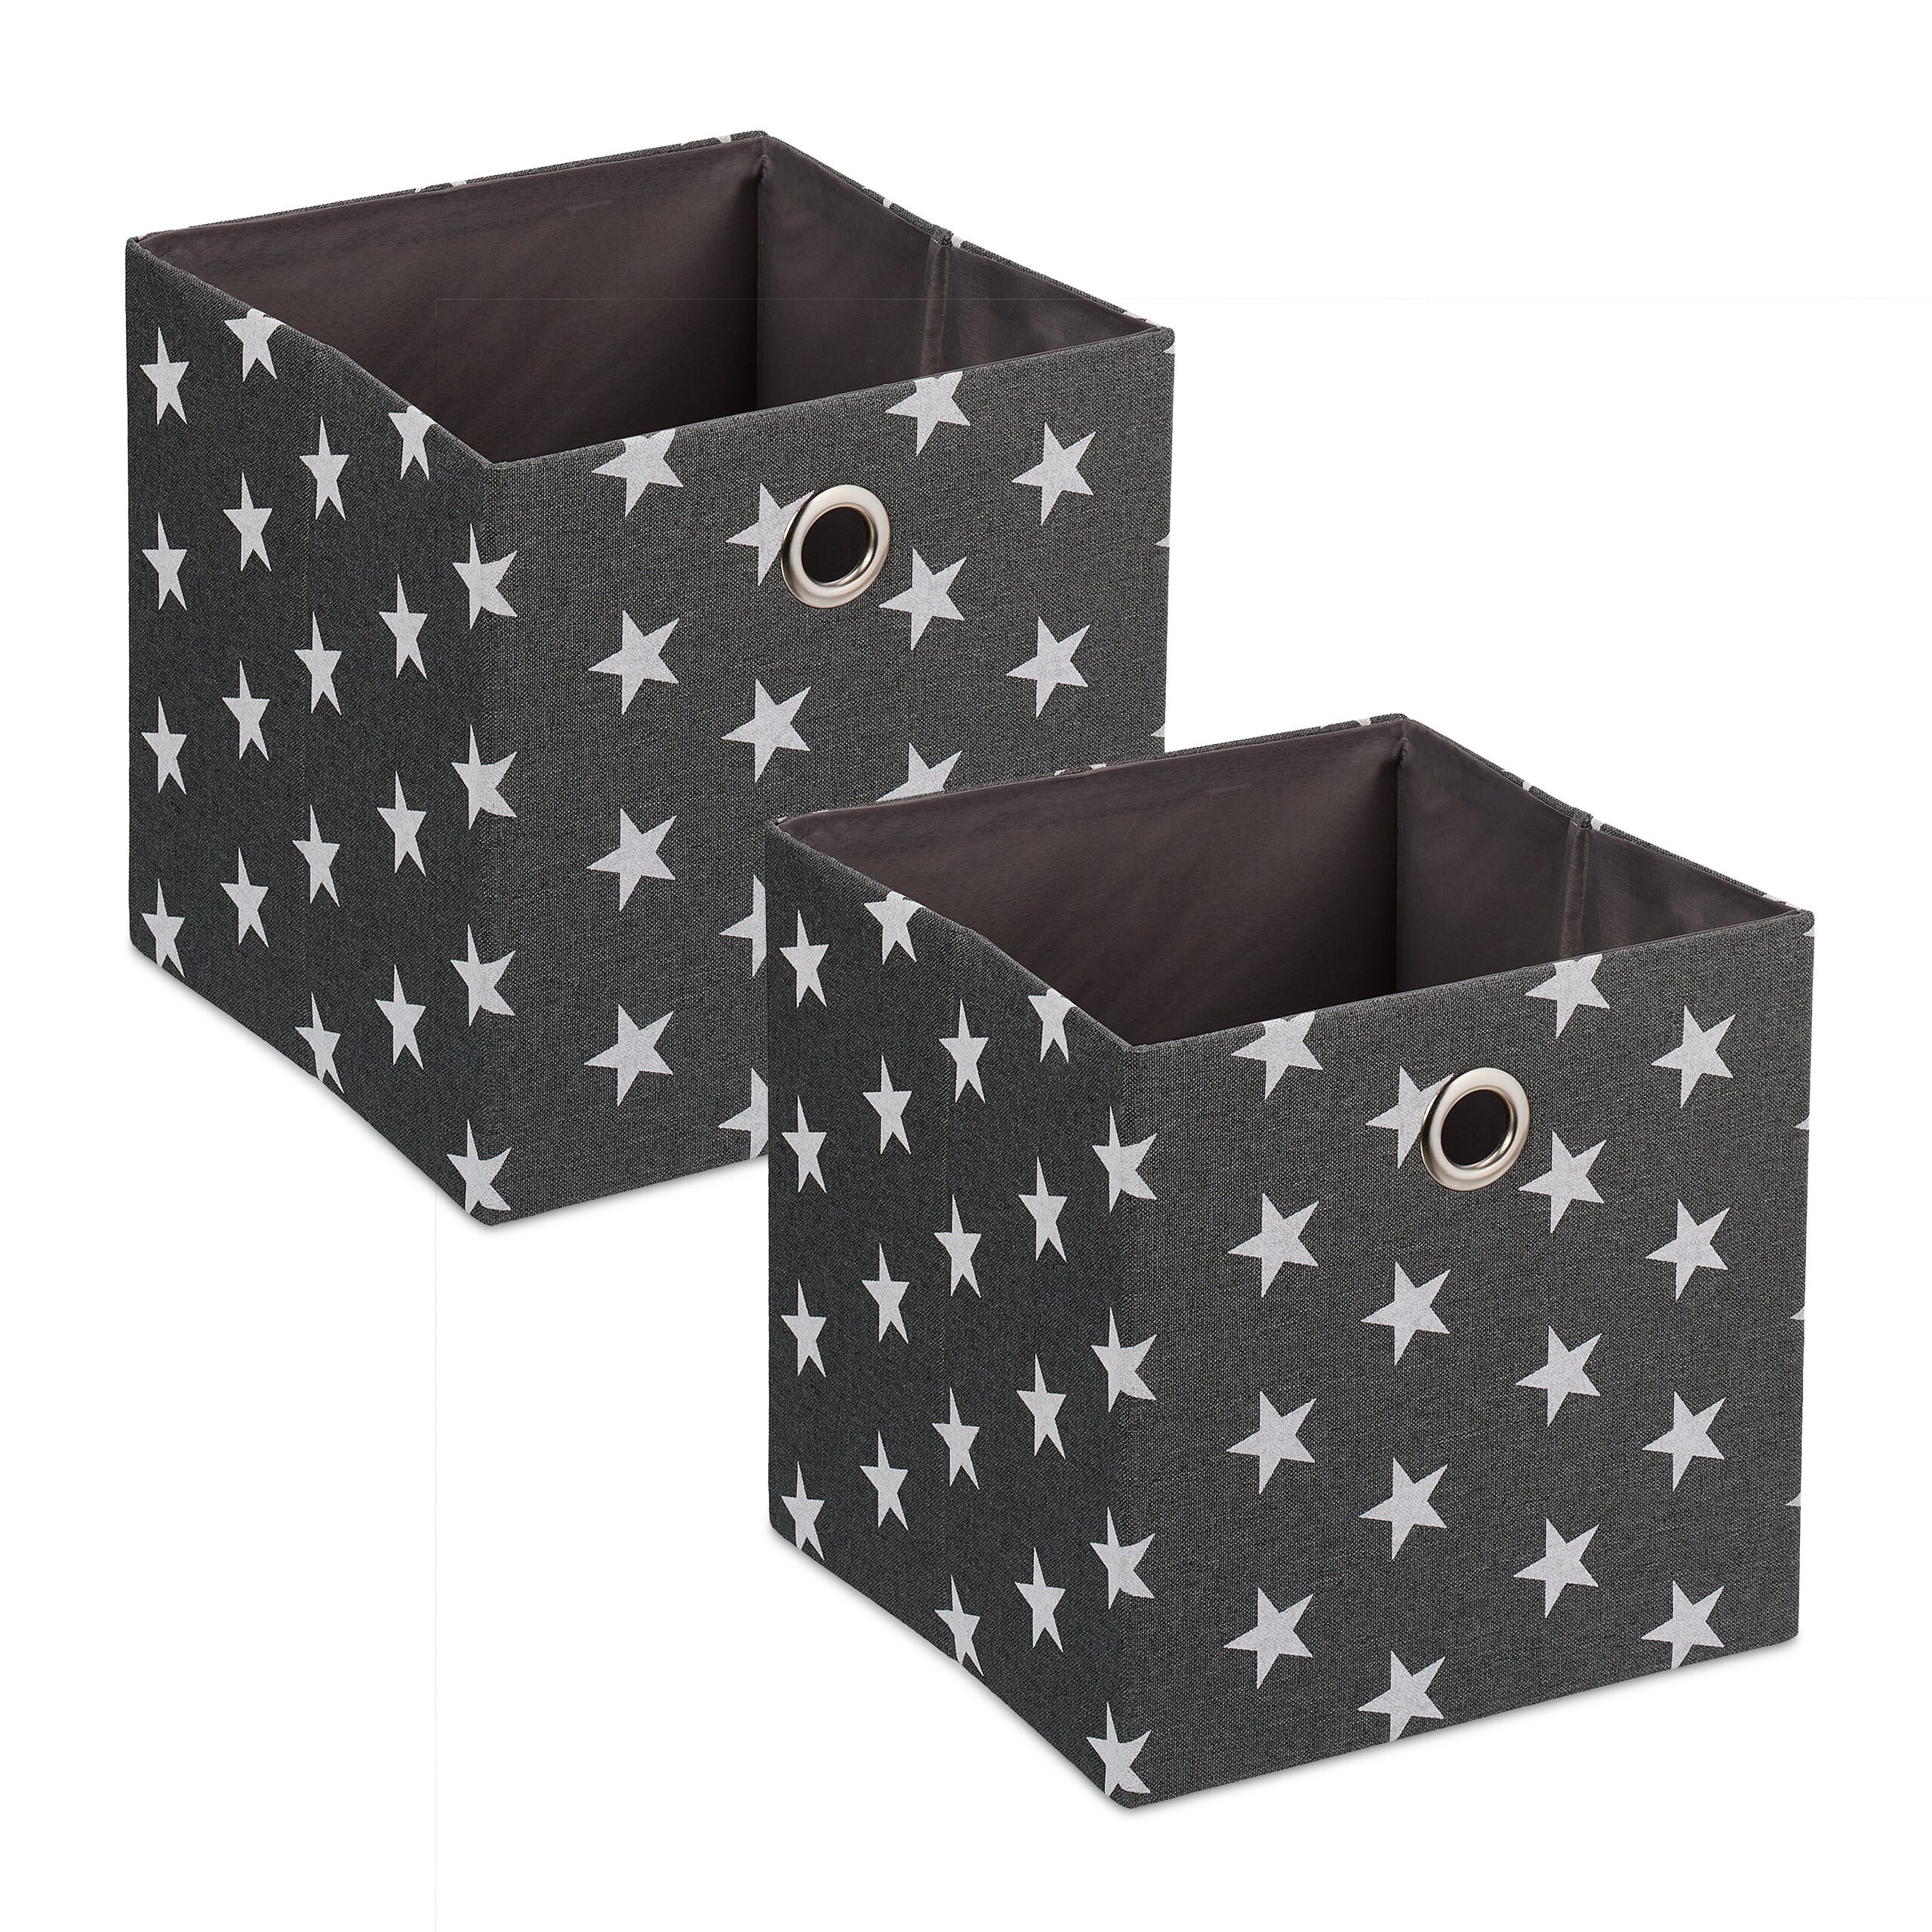 Boîte pliante boîte de rangement étagère boîte lot de 8 30x30 cm